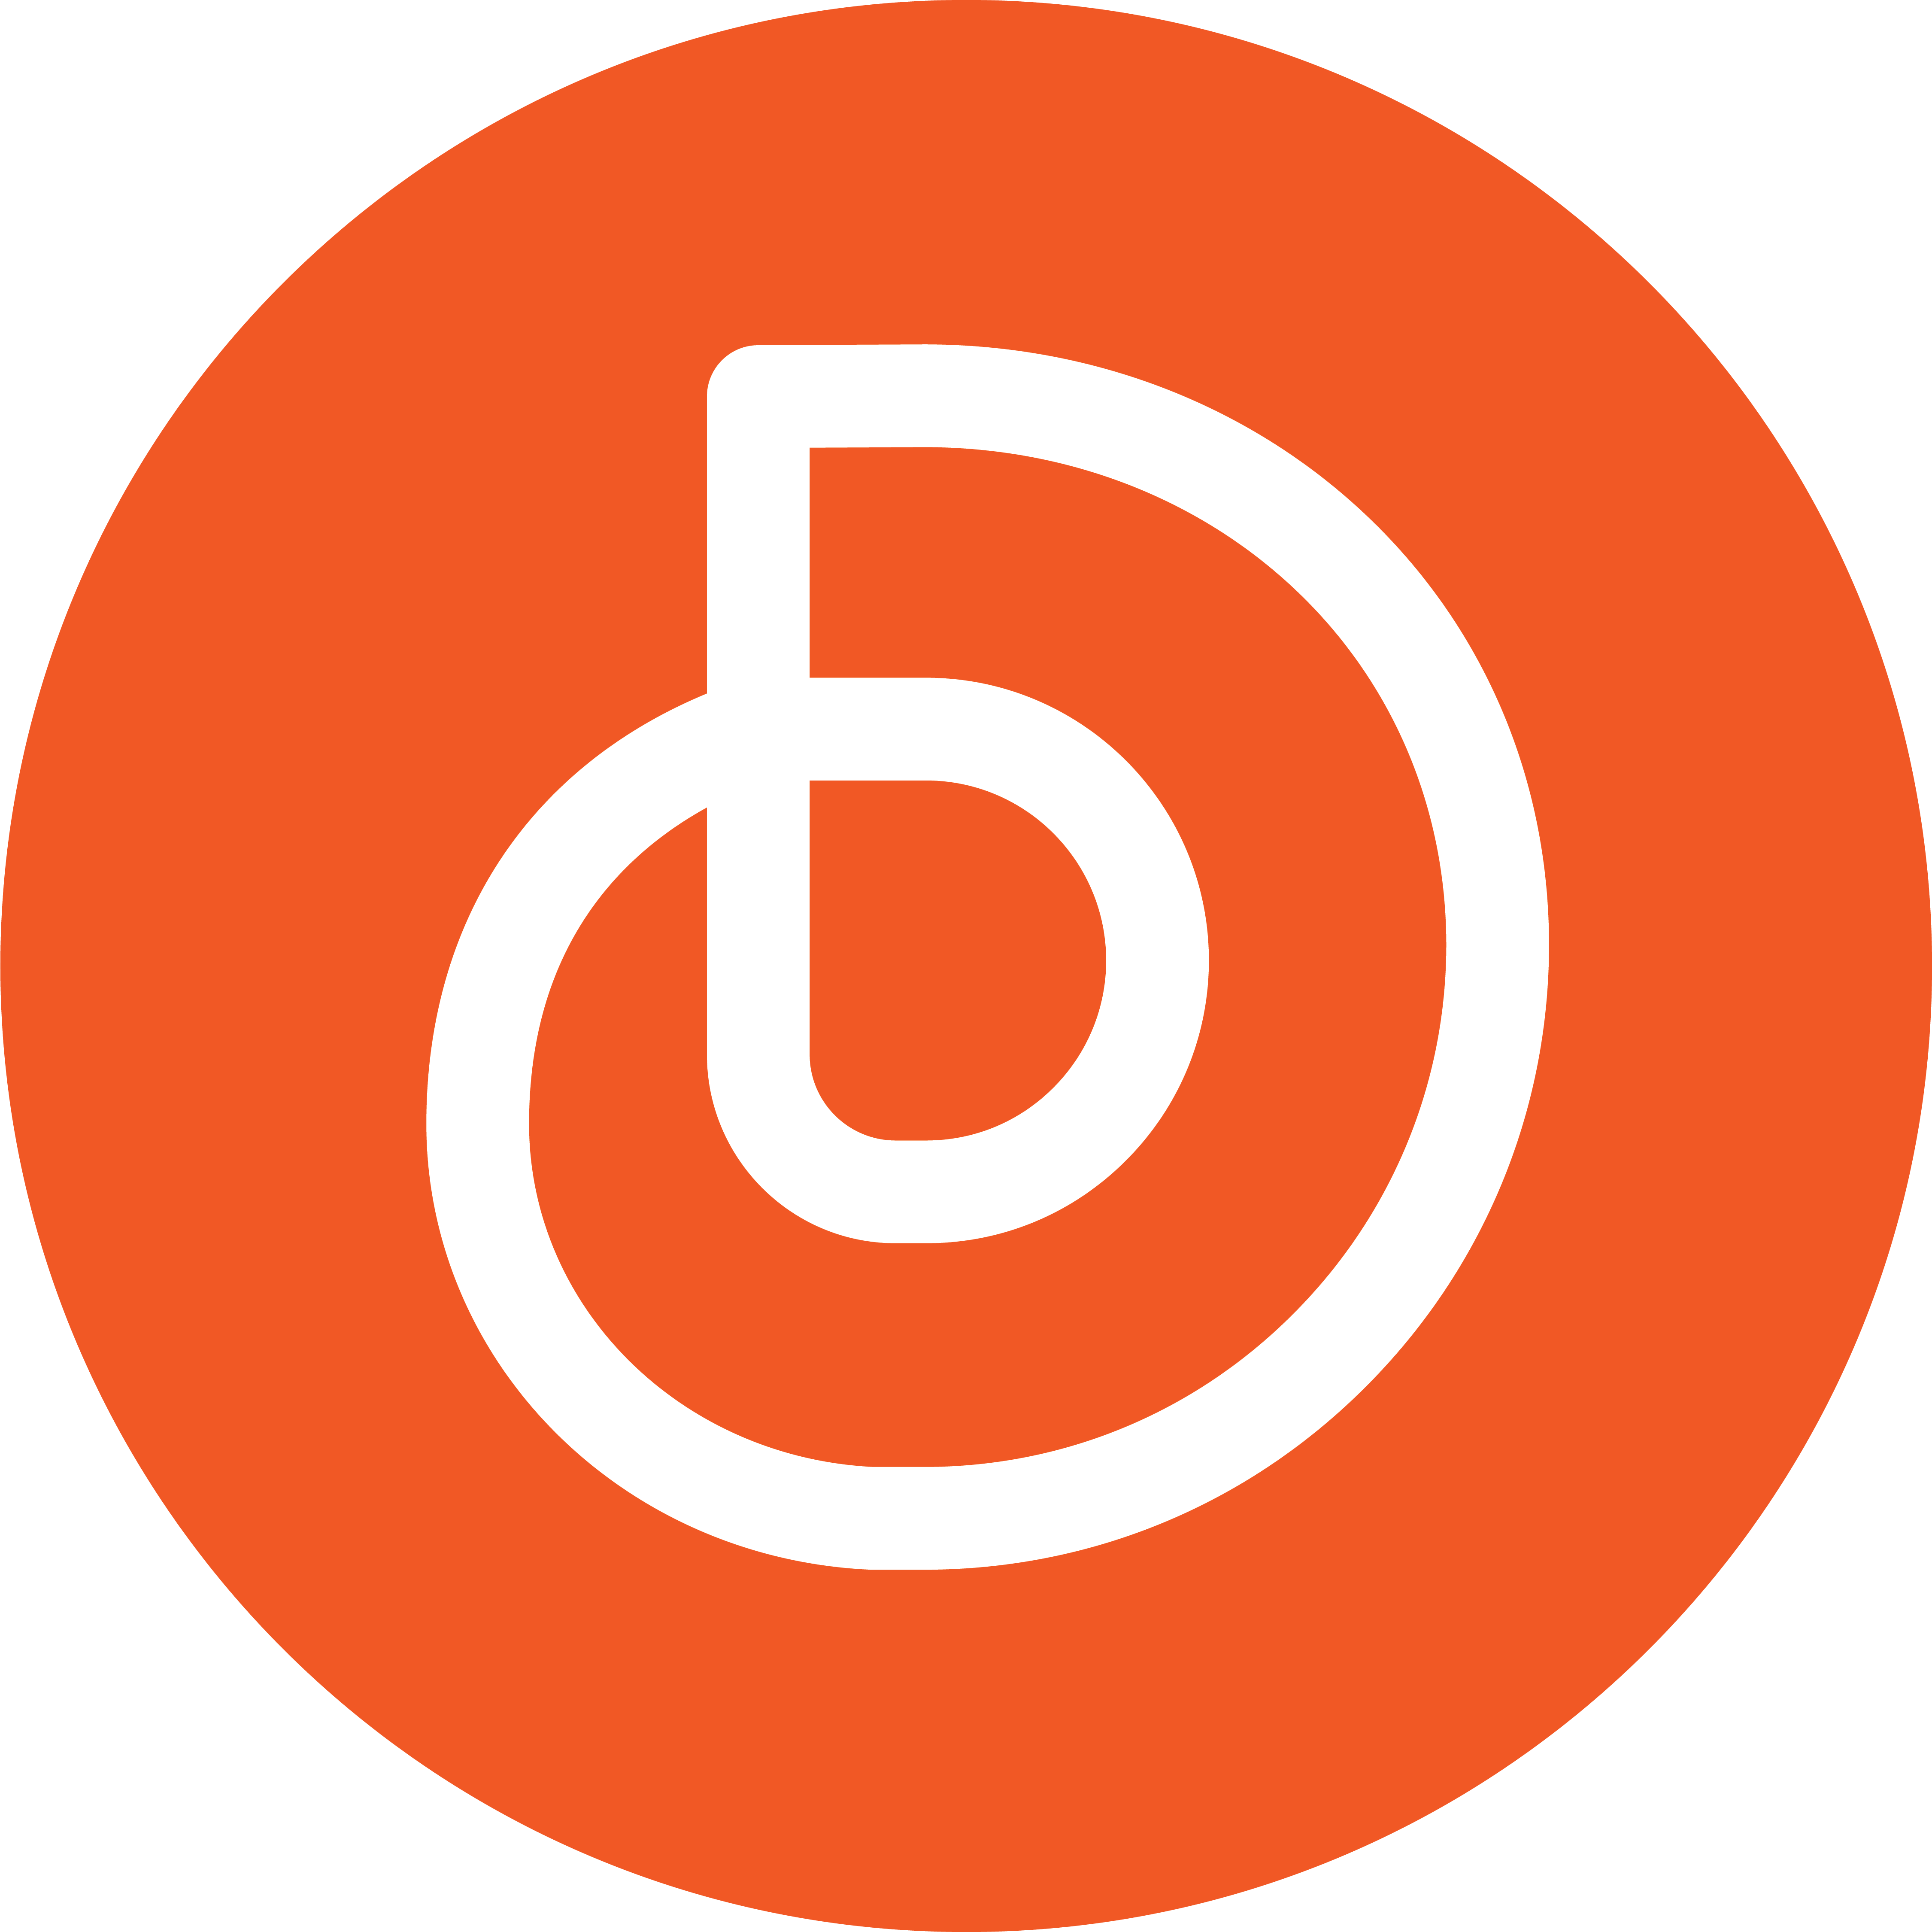 dbrandcom logo - brand consultant